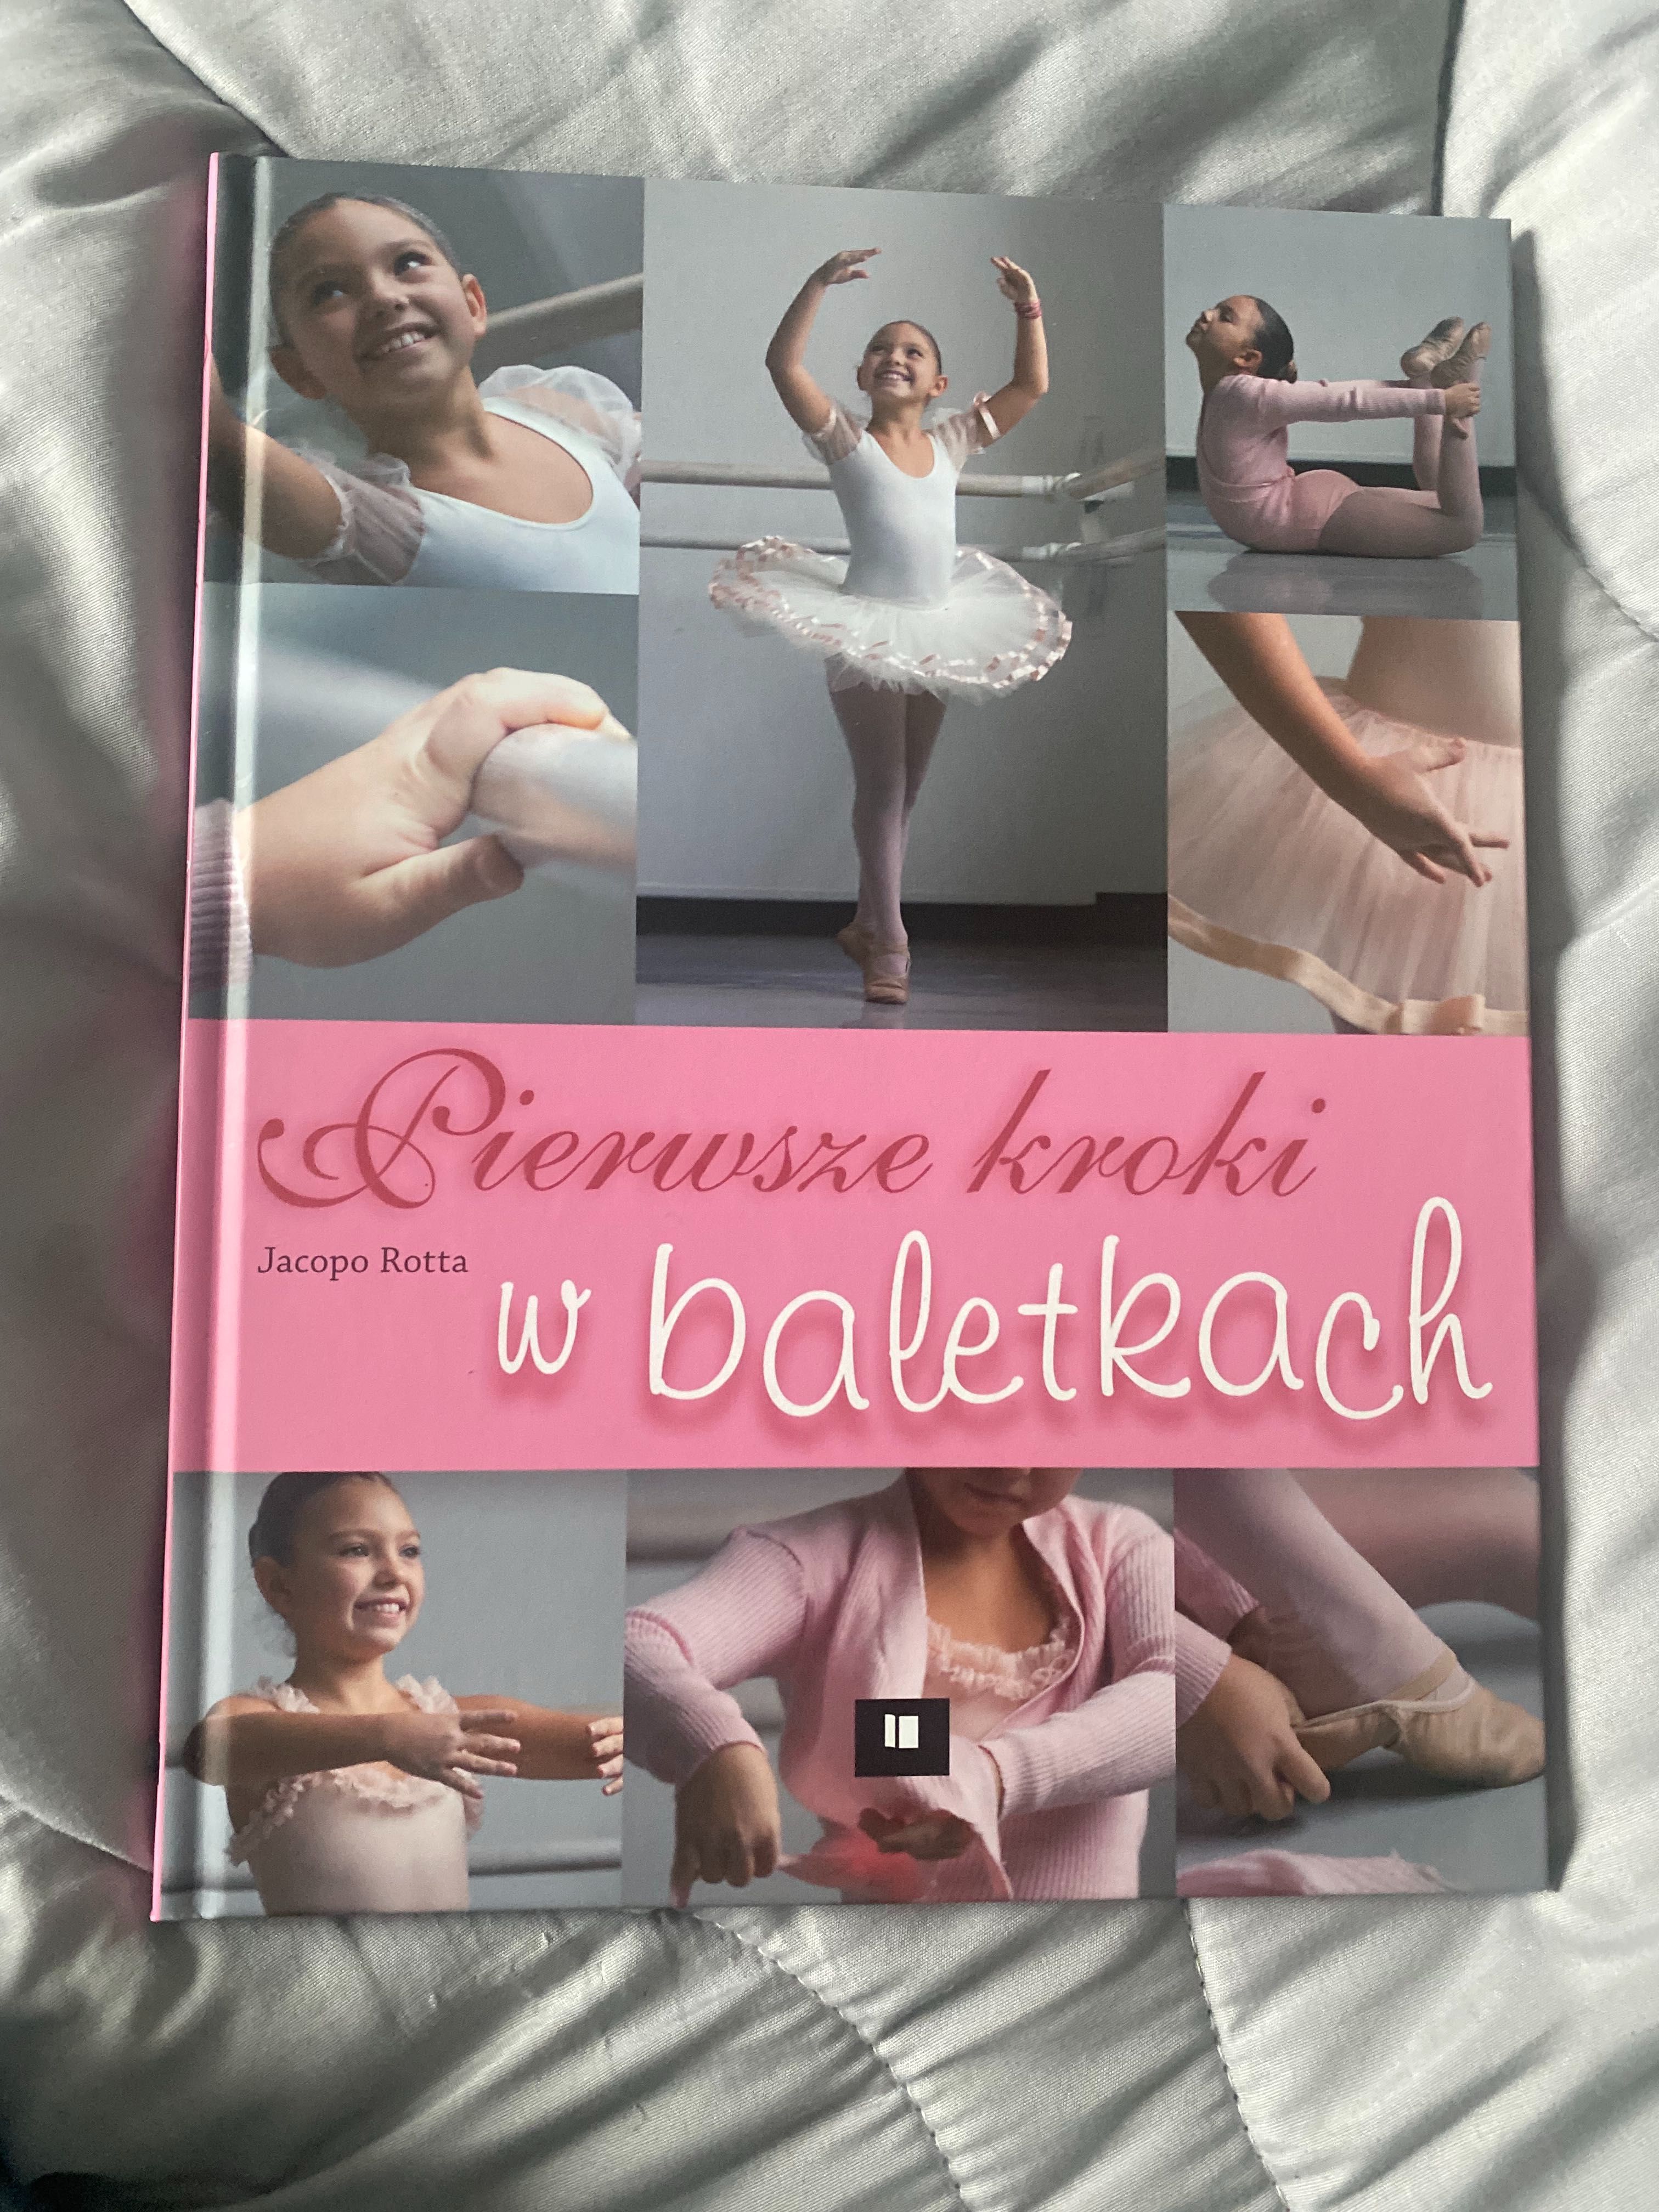 Nowa książka o balecie „Pierwsze kroki w baletkach” Jacopo Rotta